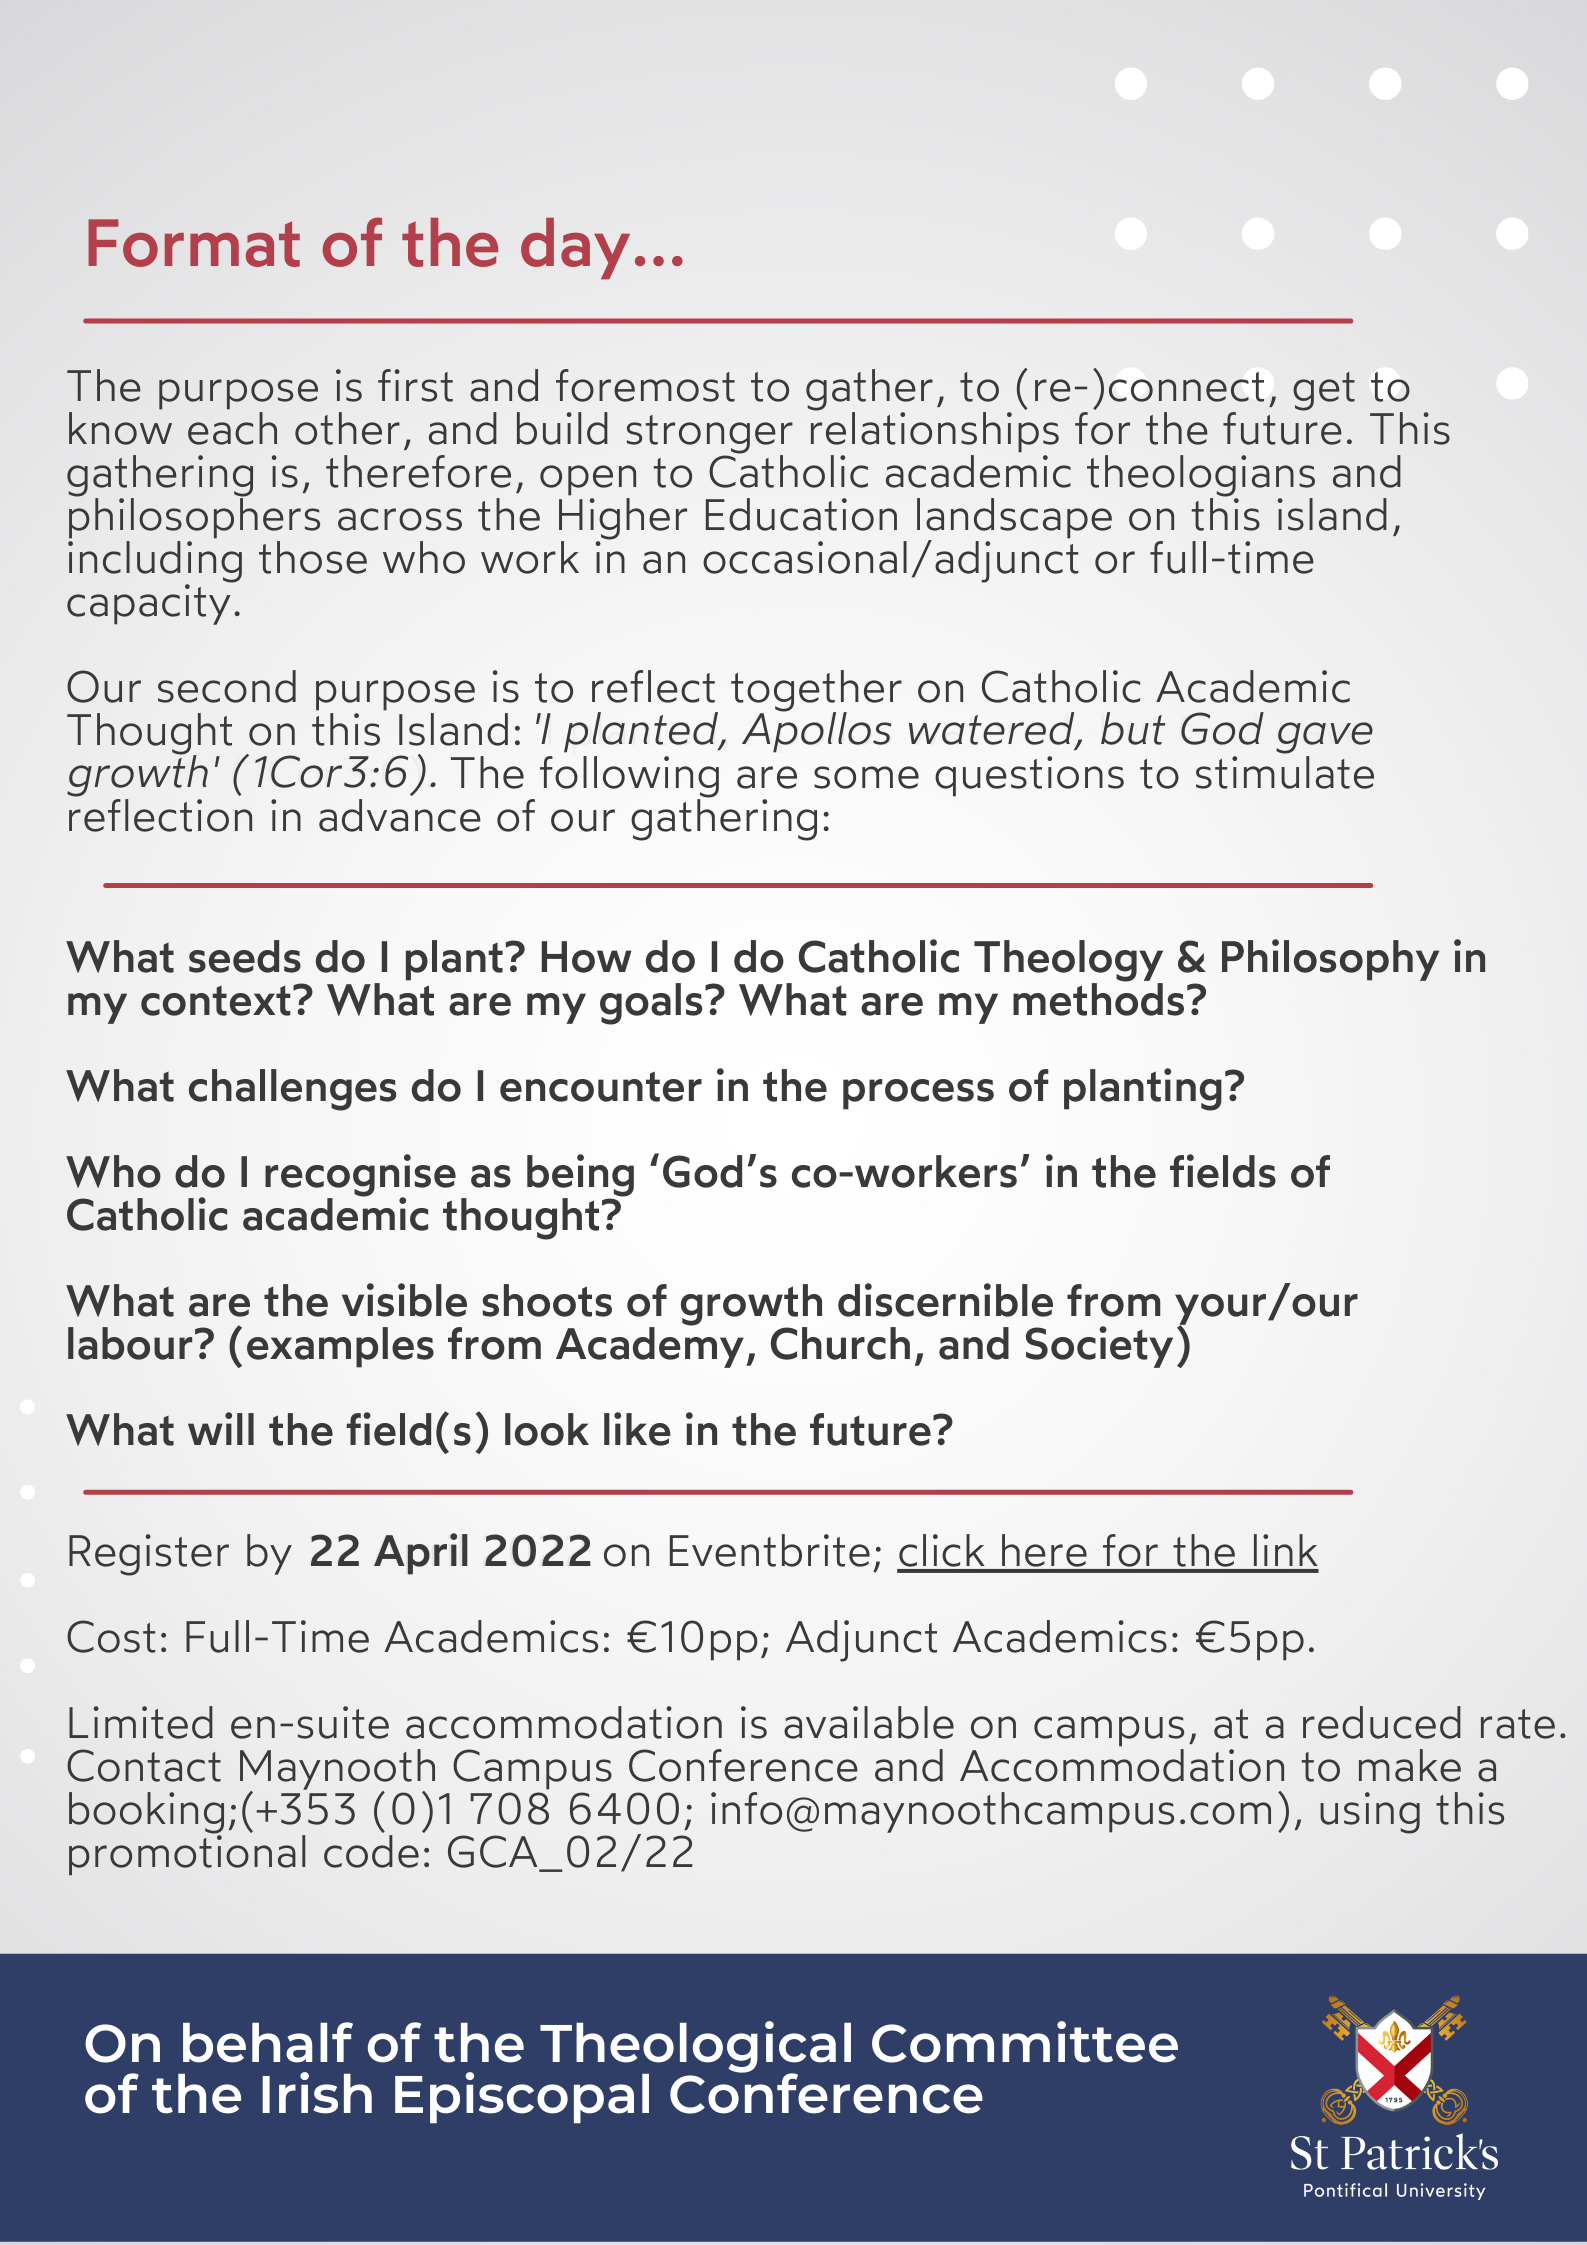 A-Gathering-of-Catholic-Academics-Ireland-2.png#asset:12500